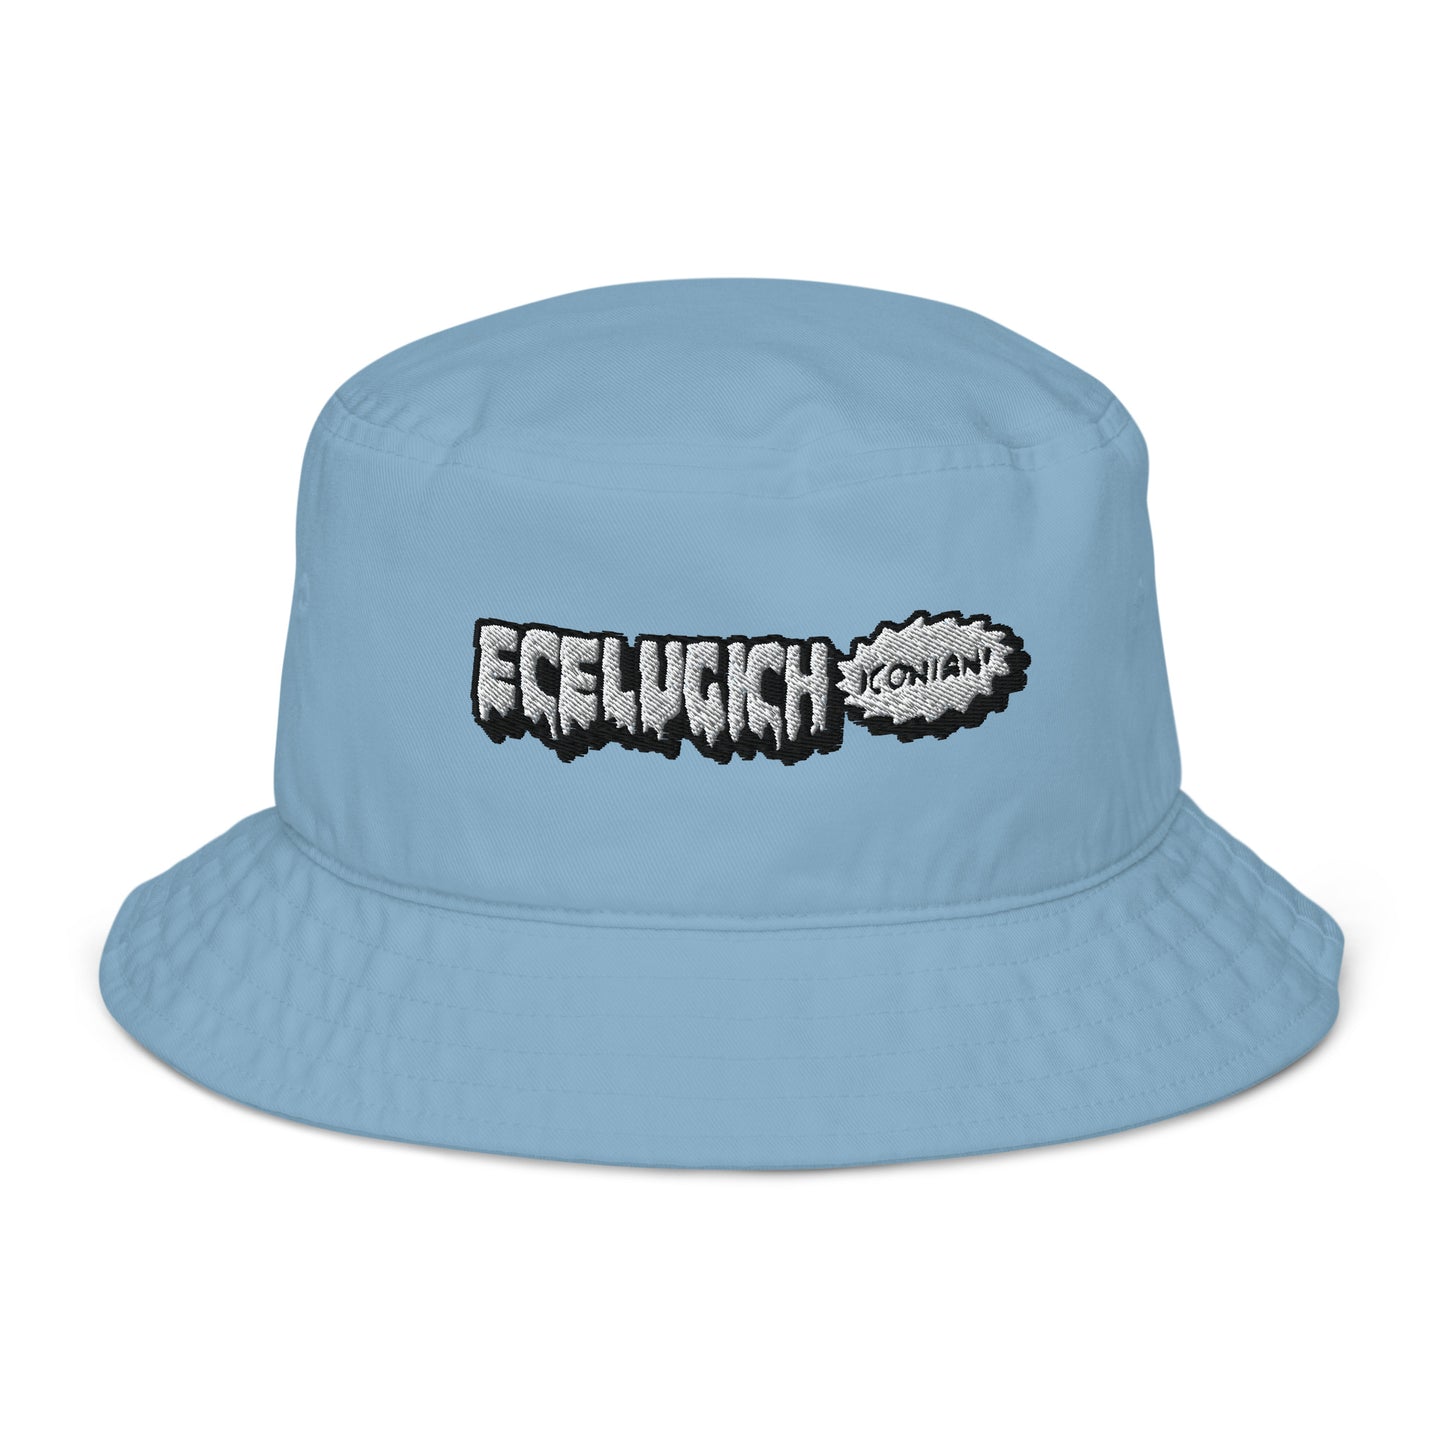 ECELUGICH Organic bucket hat